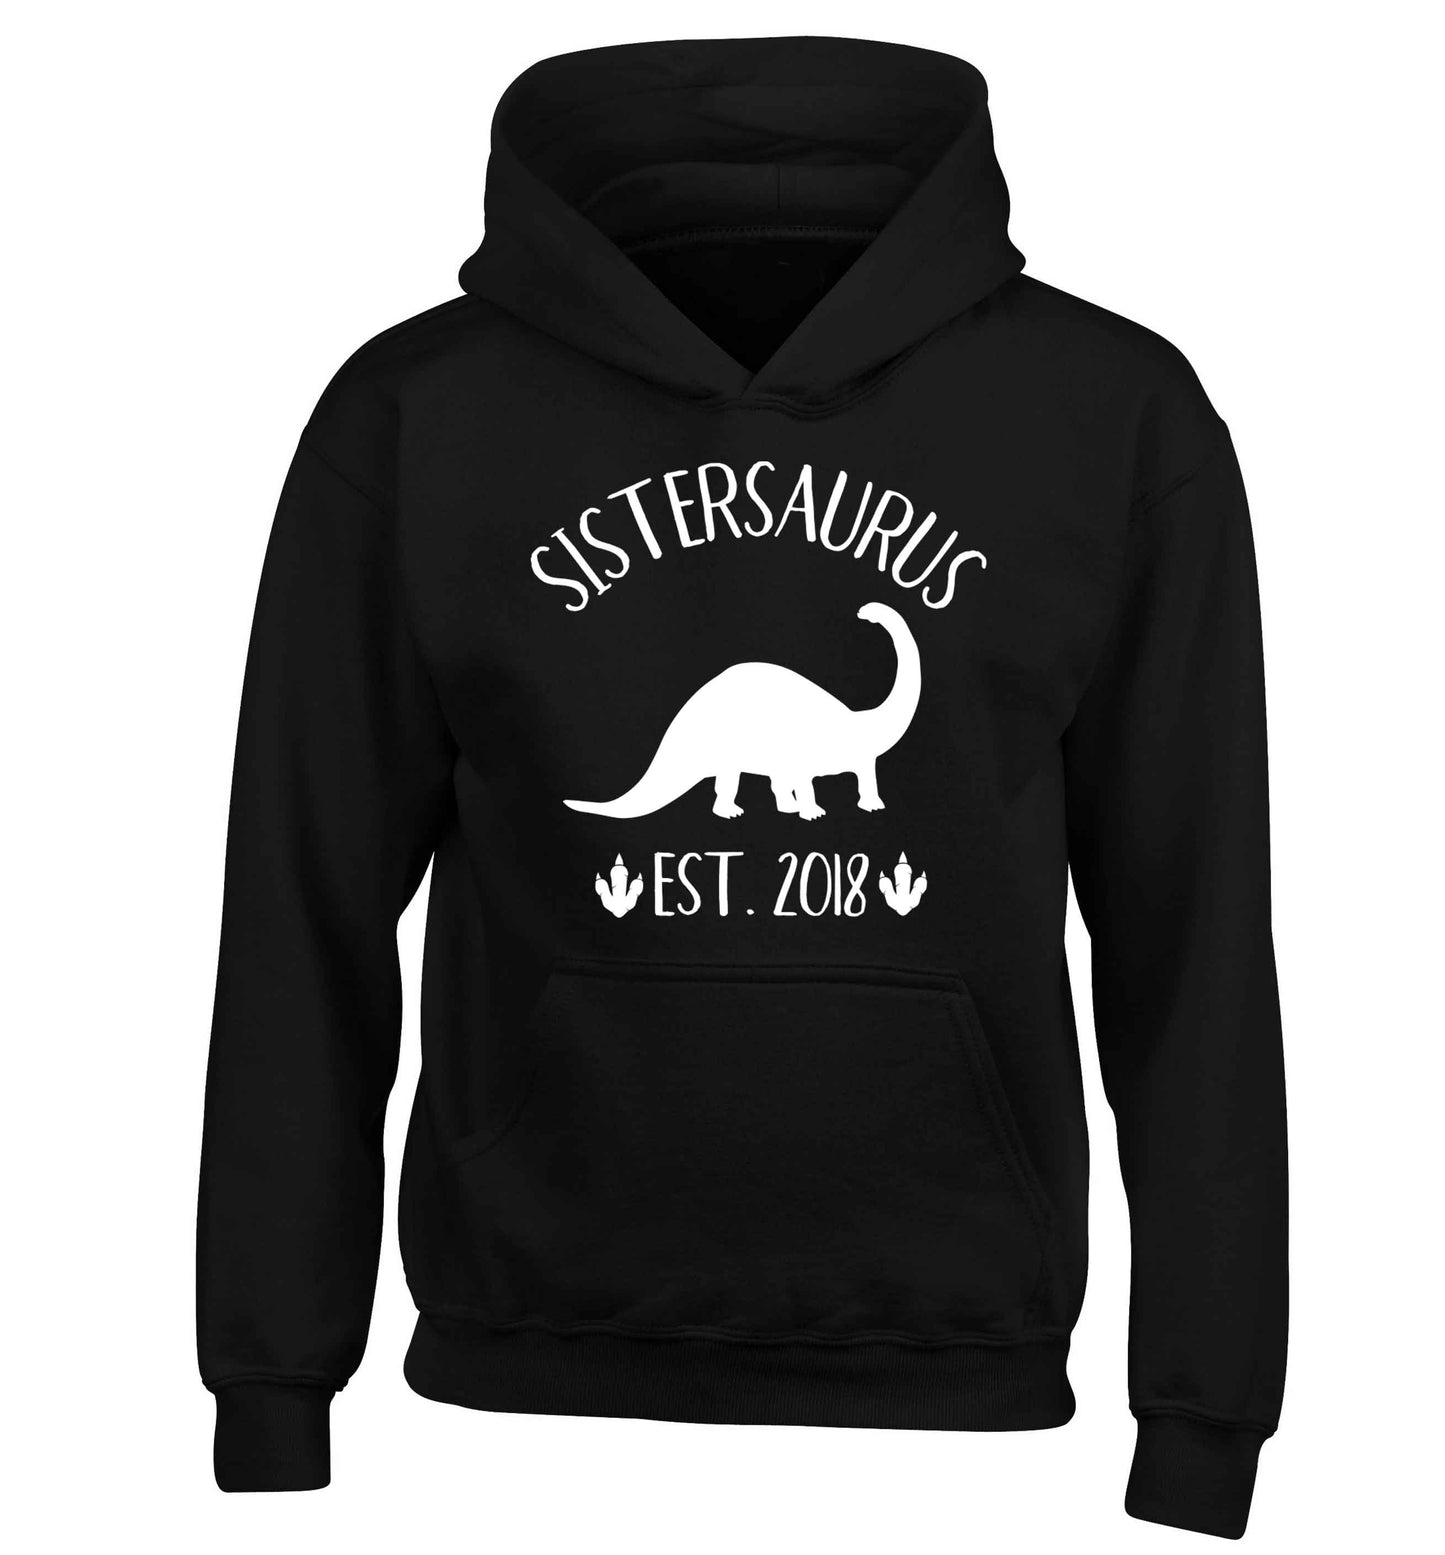 Personalised sistersaurus since (custom date) children's black hoodie 12-13 Years